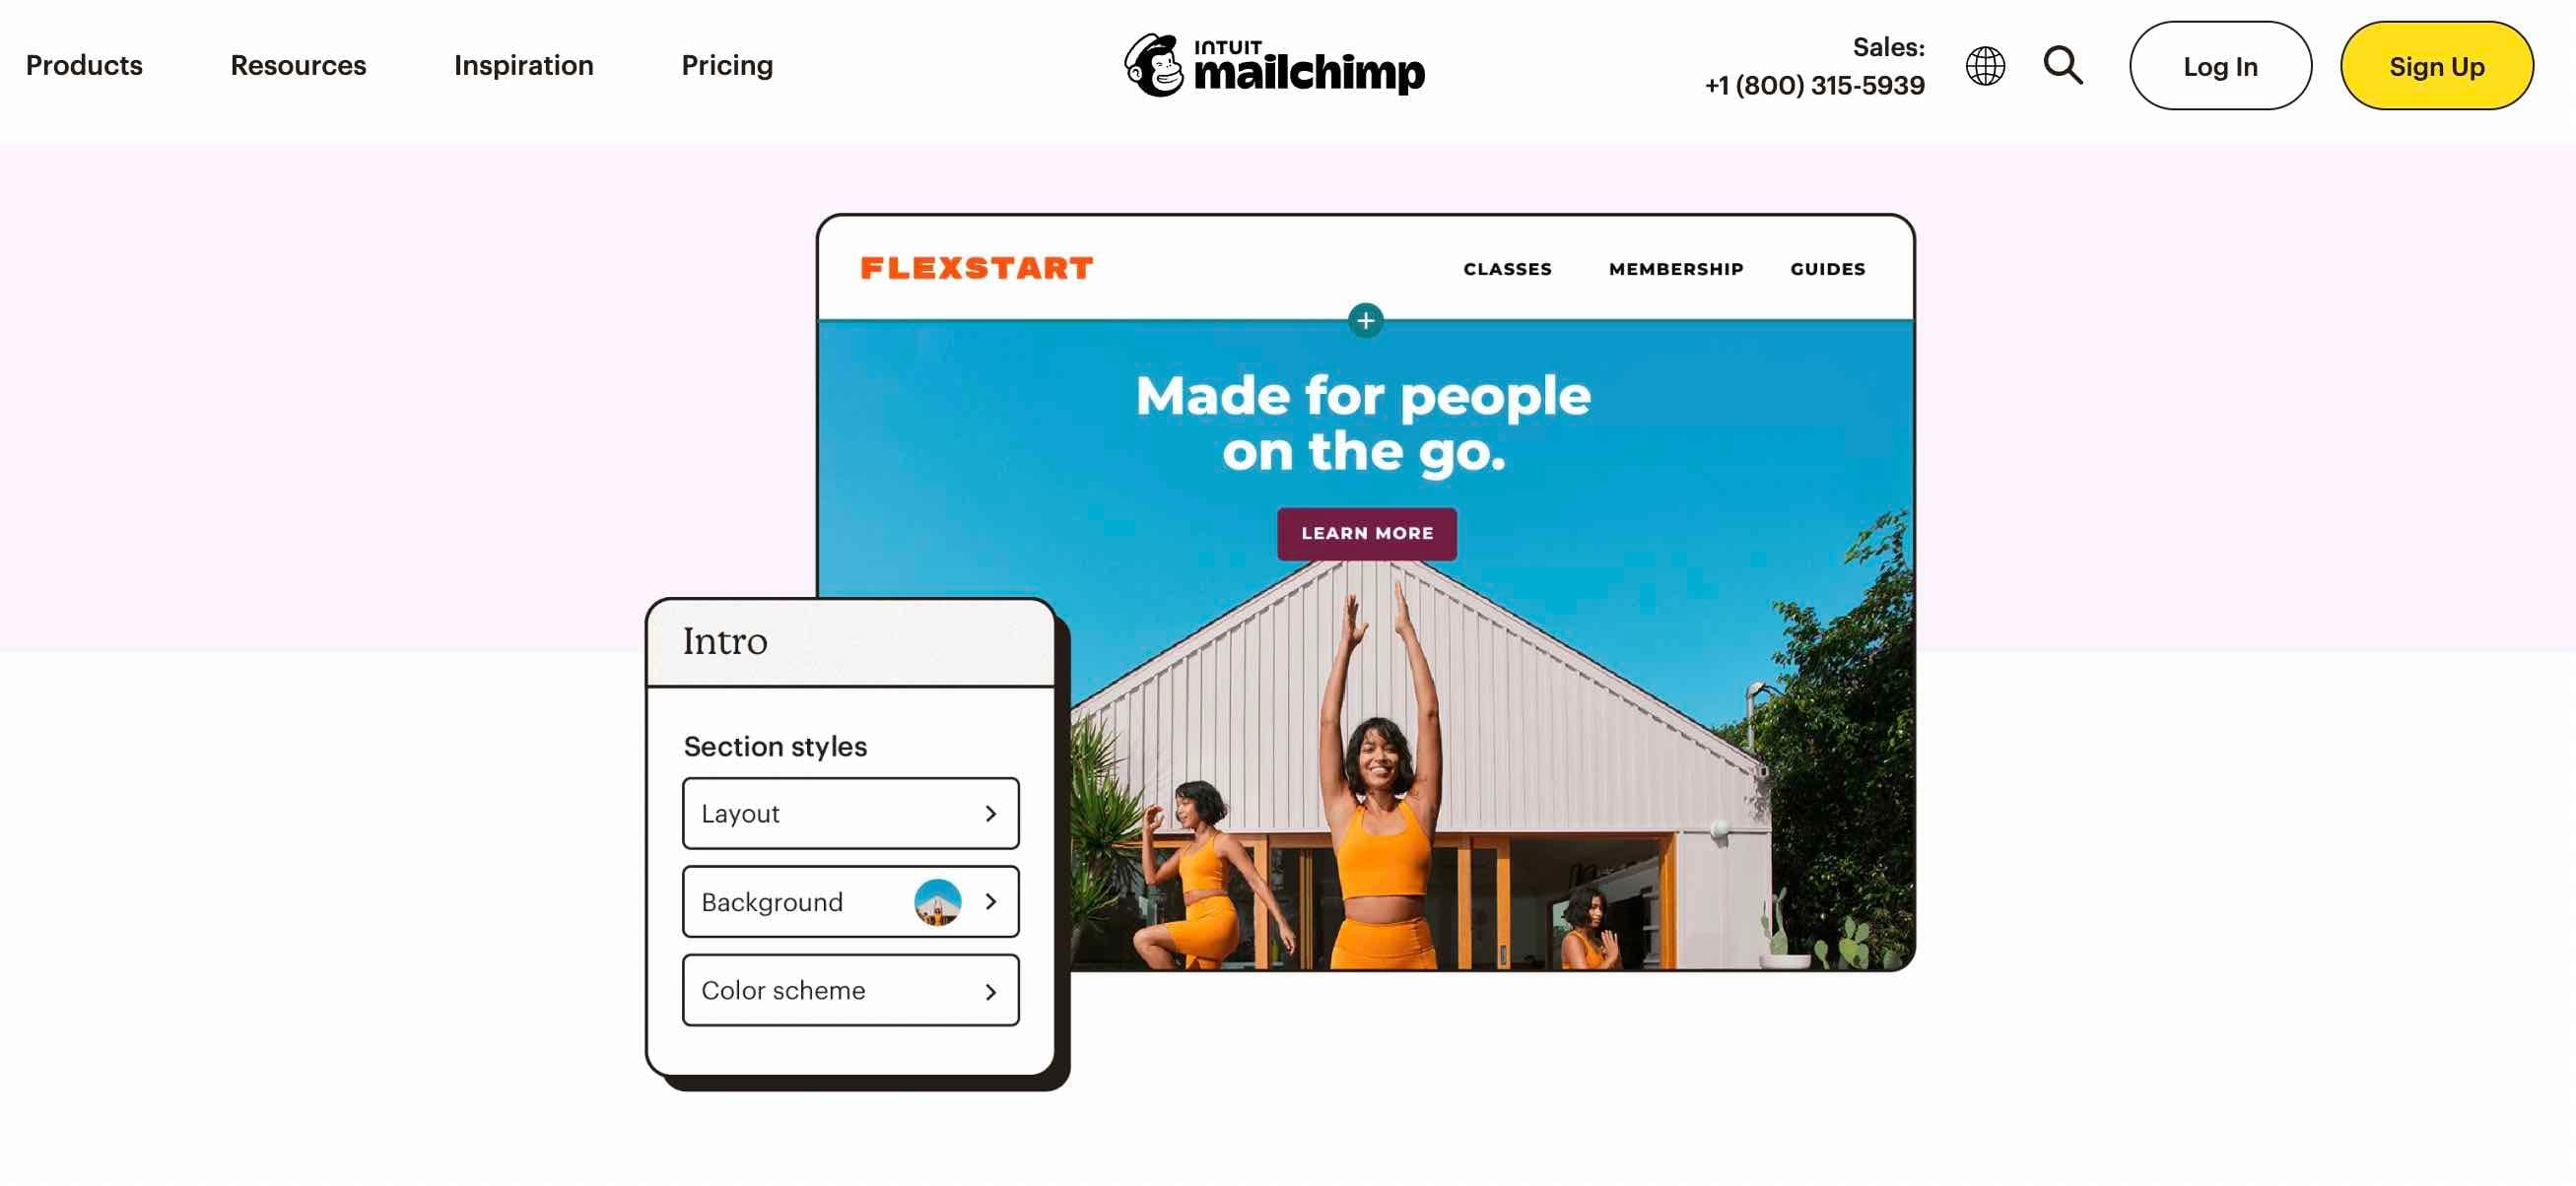 Creador de sitios web gratuito, MailChimp es su ventanilla única para todo lo relacionado con el marketing, incluida la creación de su sitio web básico gratuito.